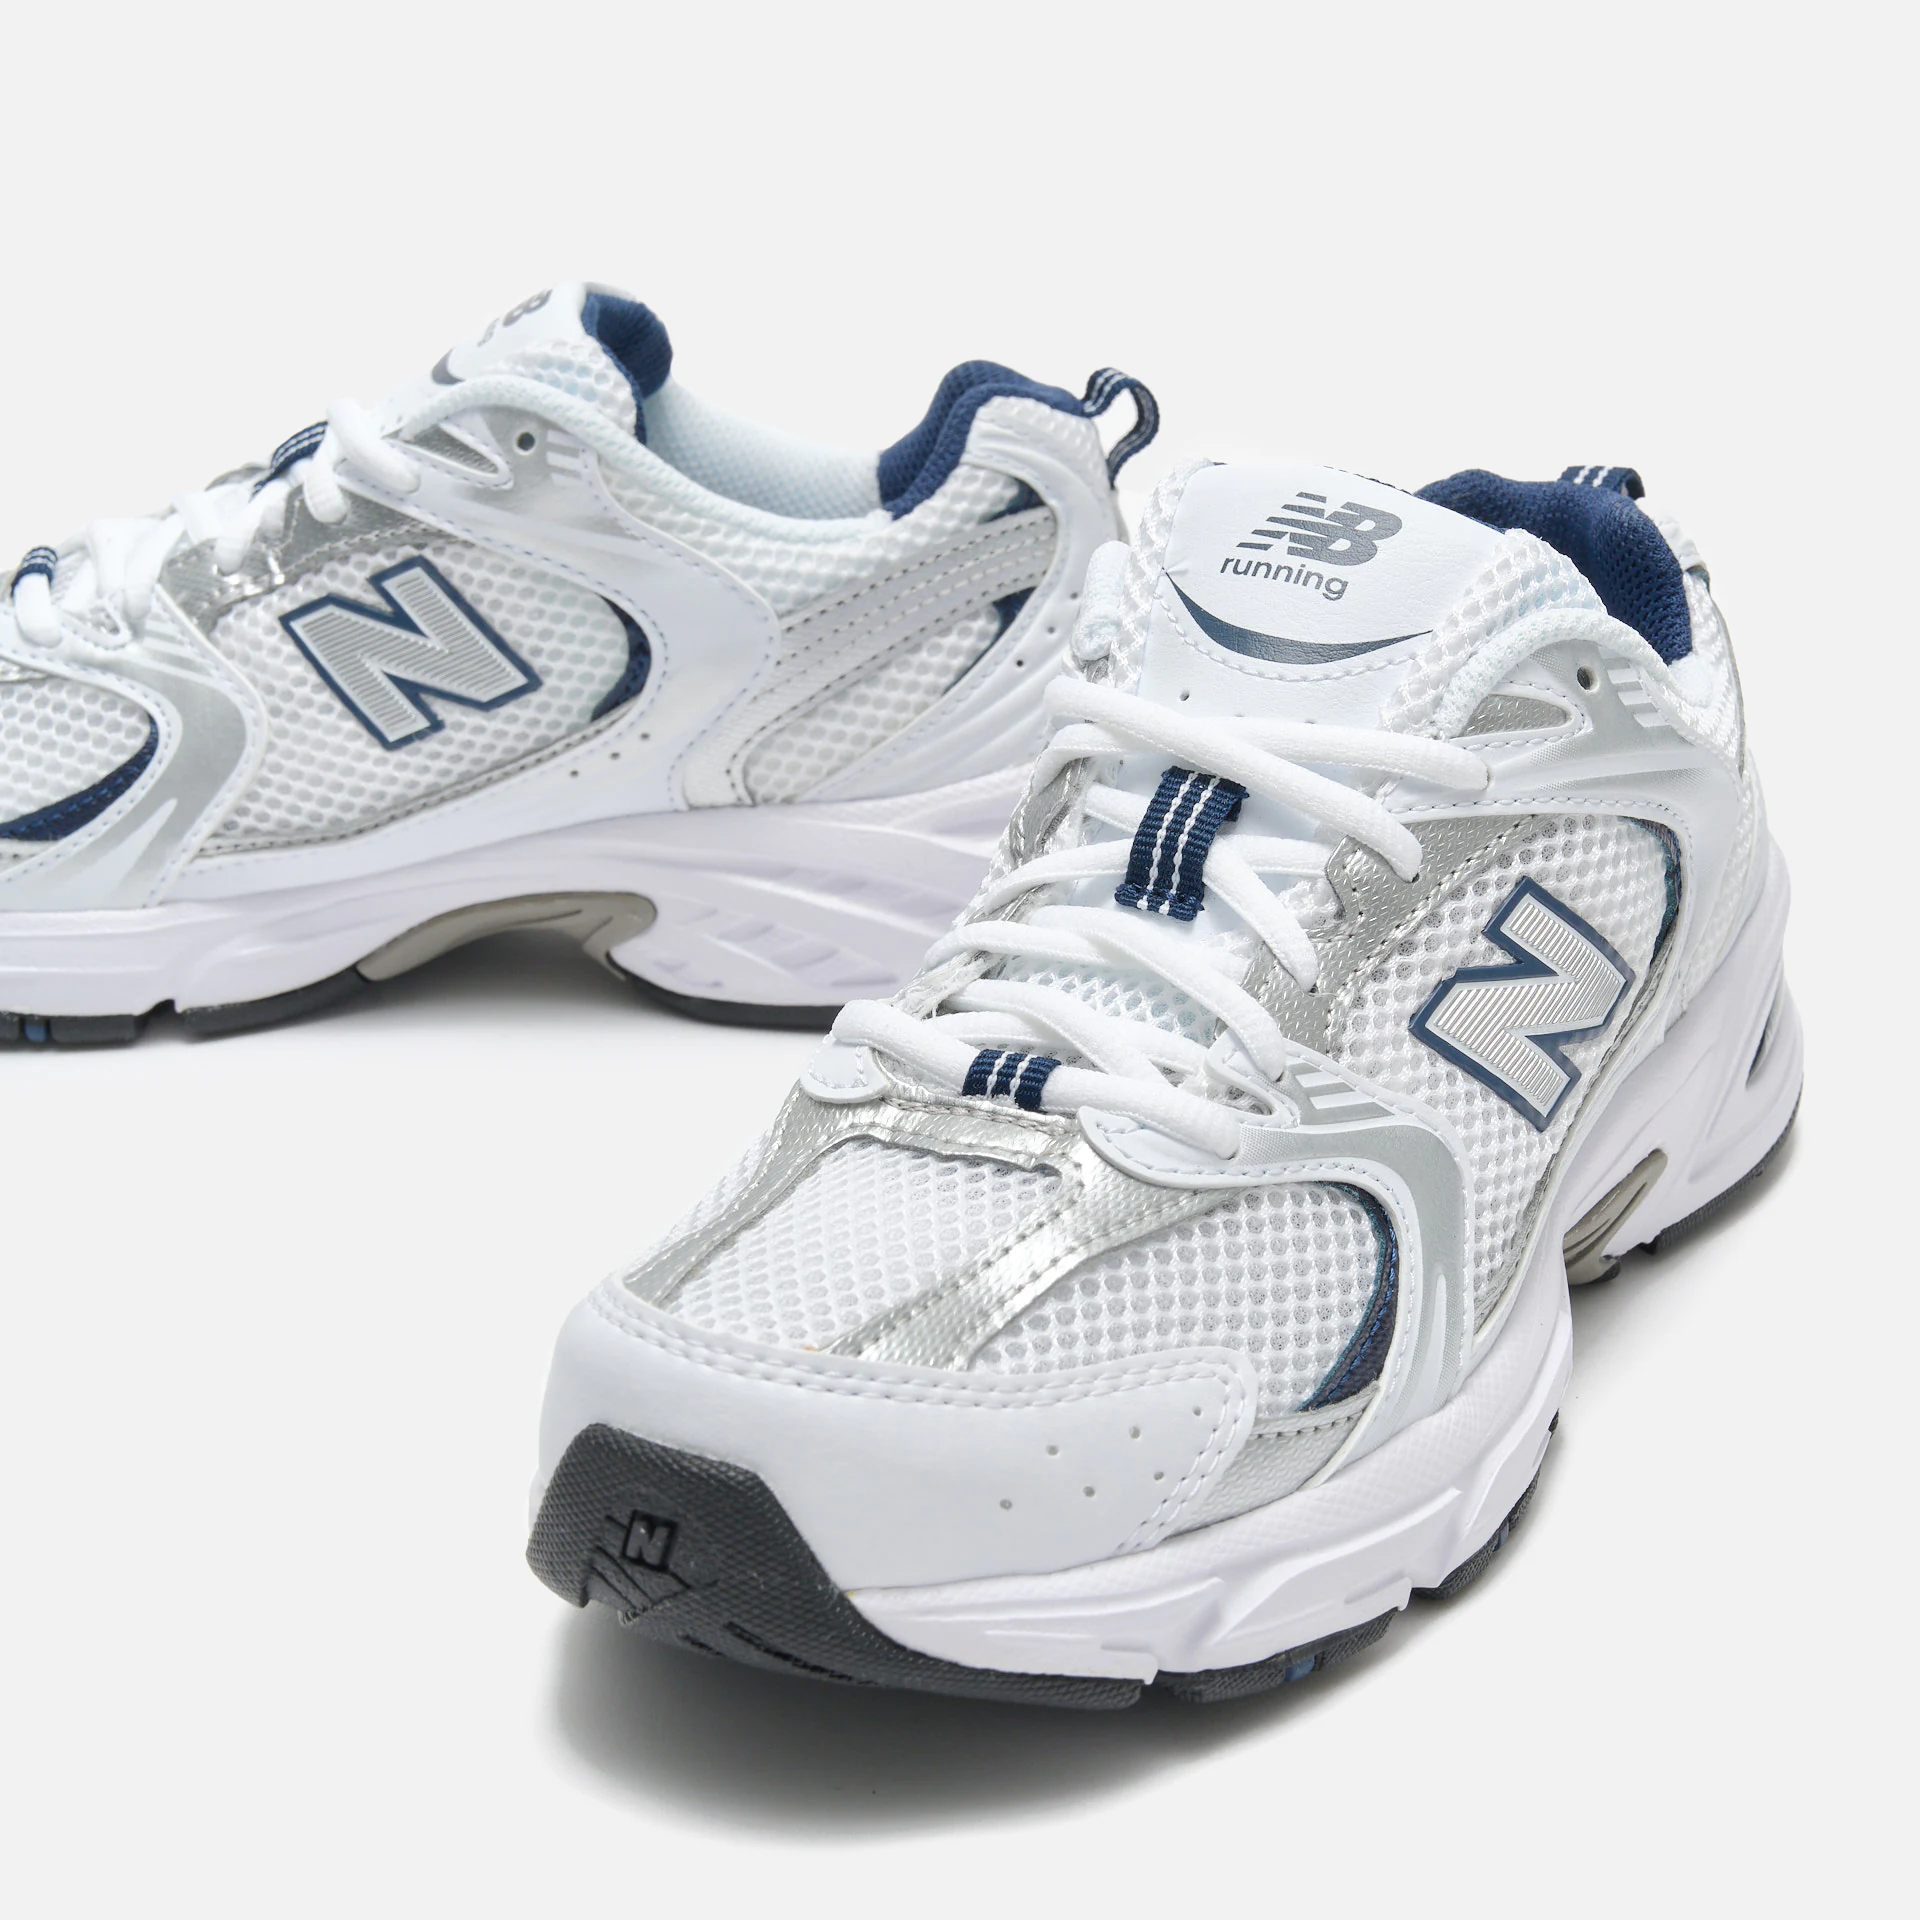 New Balance MR530SG Sneaker White/Natural Indigo